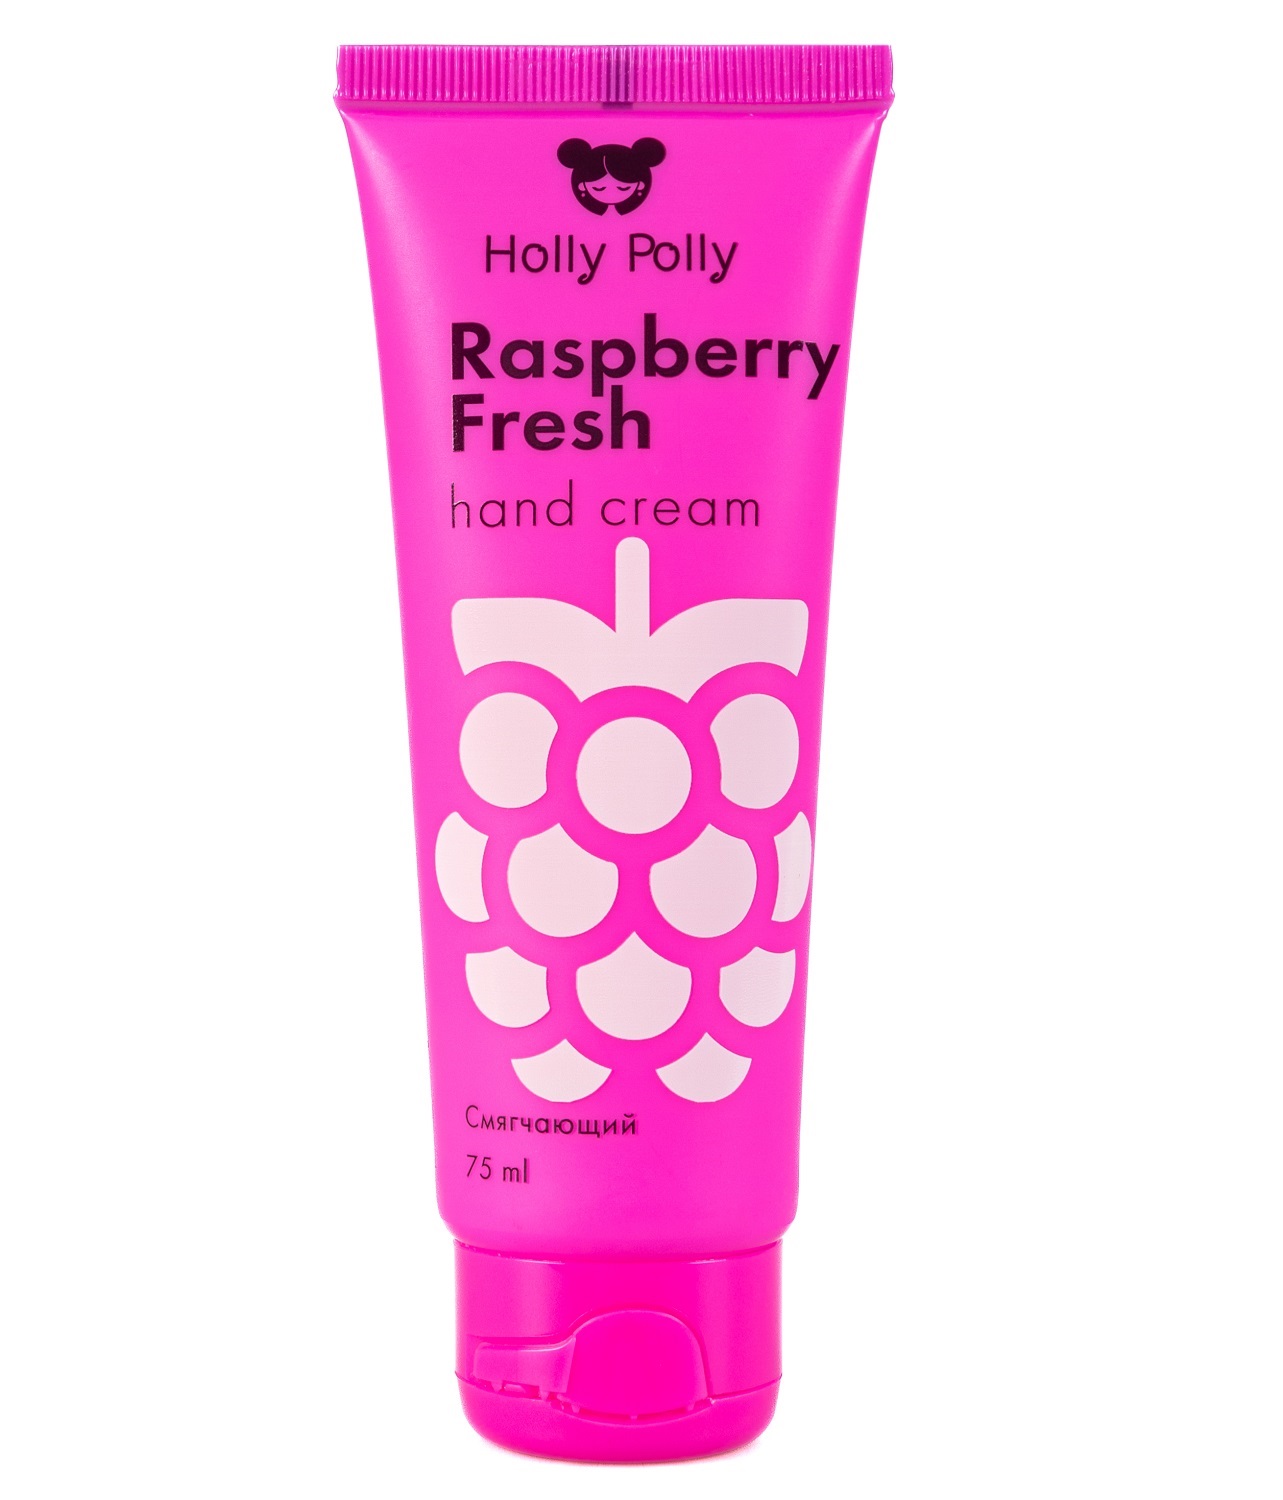 Holly Polly Смягчающий крем для рук Raspberry Fresh, 75 мл (Holly Polly, Foot & Hands)